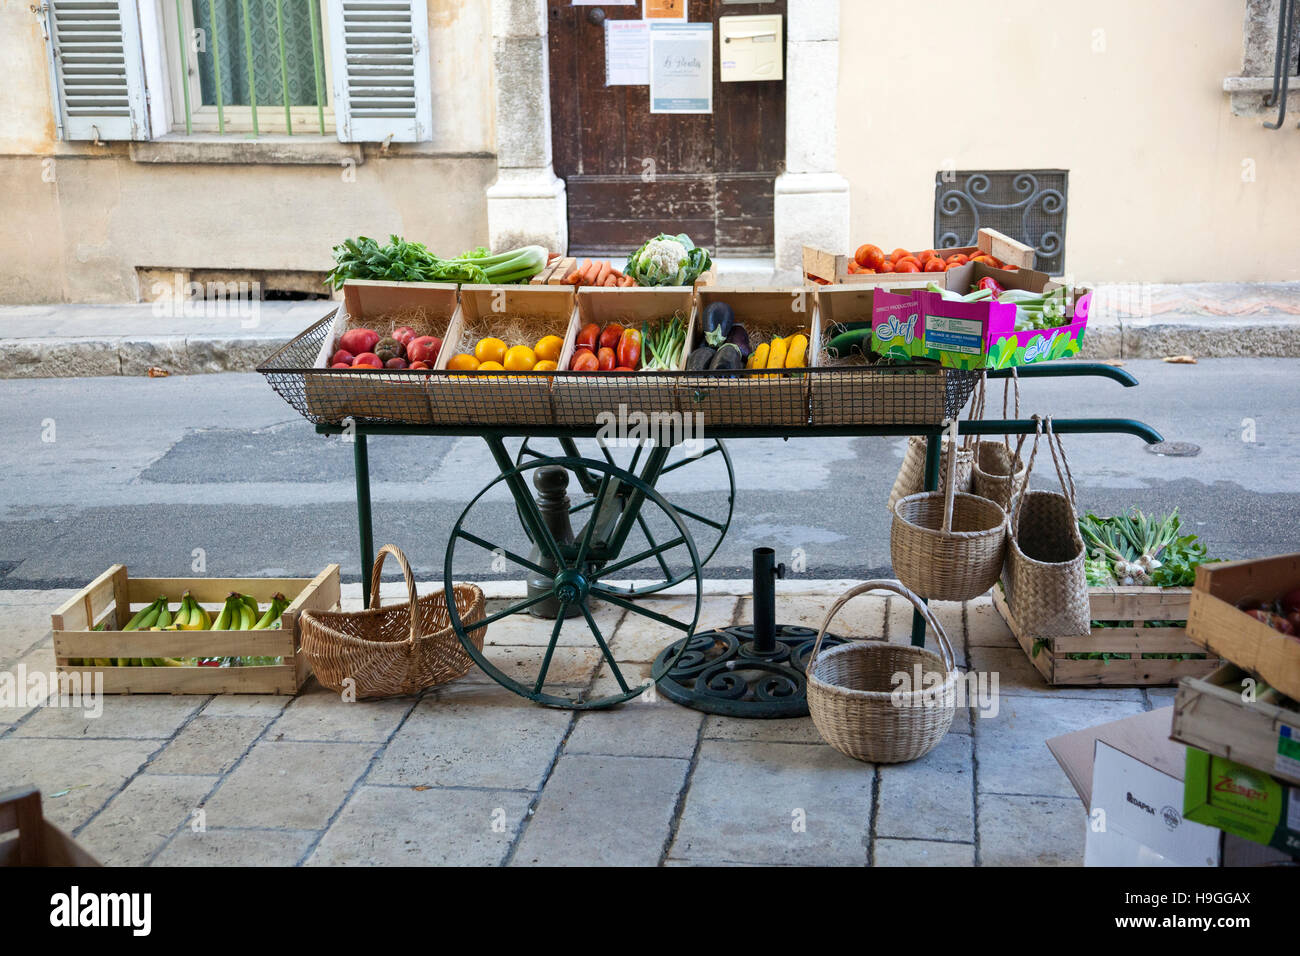 Altmodische Obst und Gemüse Wagen auf Rädern Stockfoto